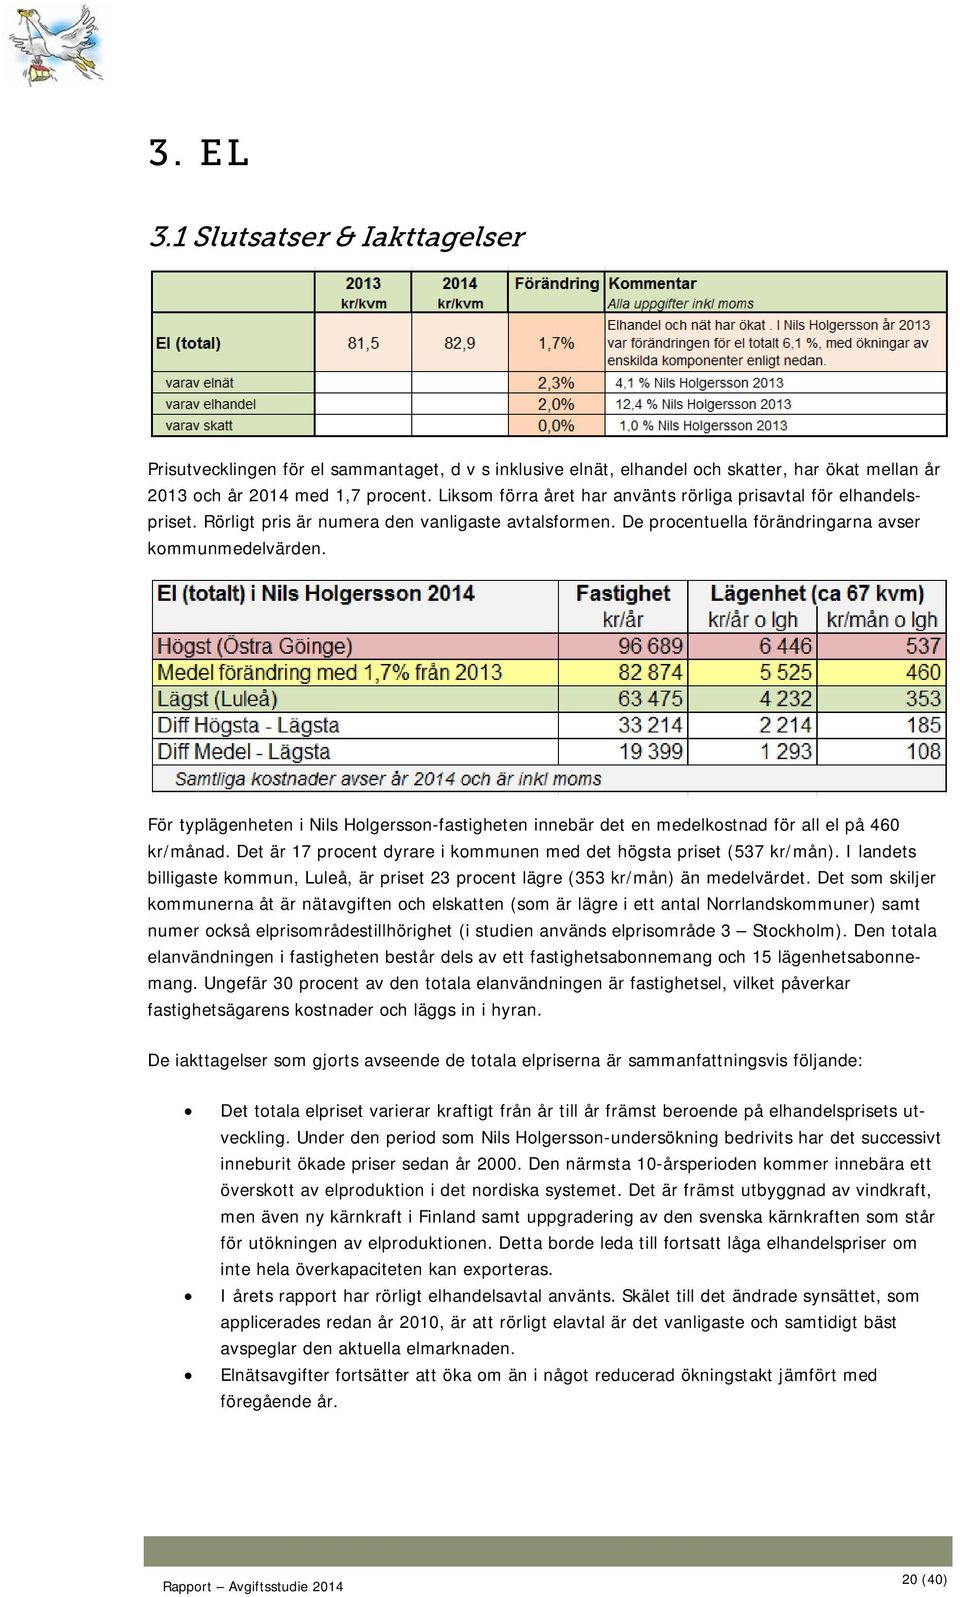 För typlägenheten i Nils Holgersson-fastigheten innebär det en medelkostnad för all el på 460 kr/månad. Det är 17 procent dyrare i kommunen med det högsta priset (537 kr/mån).